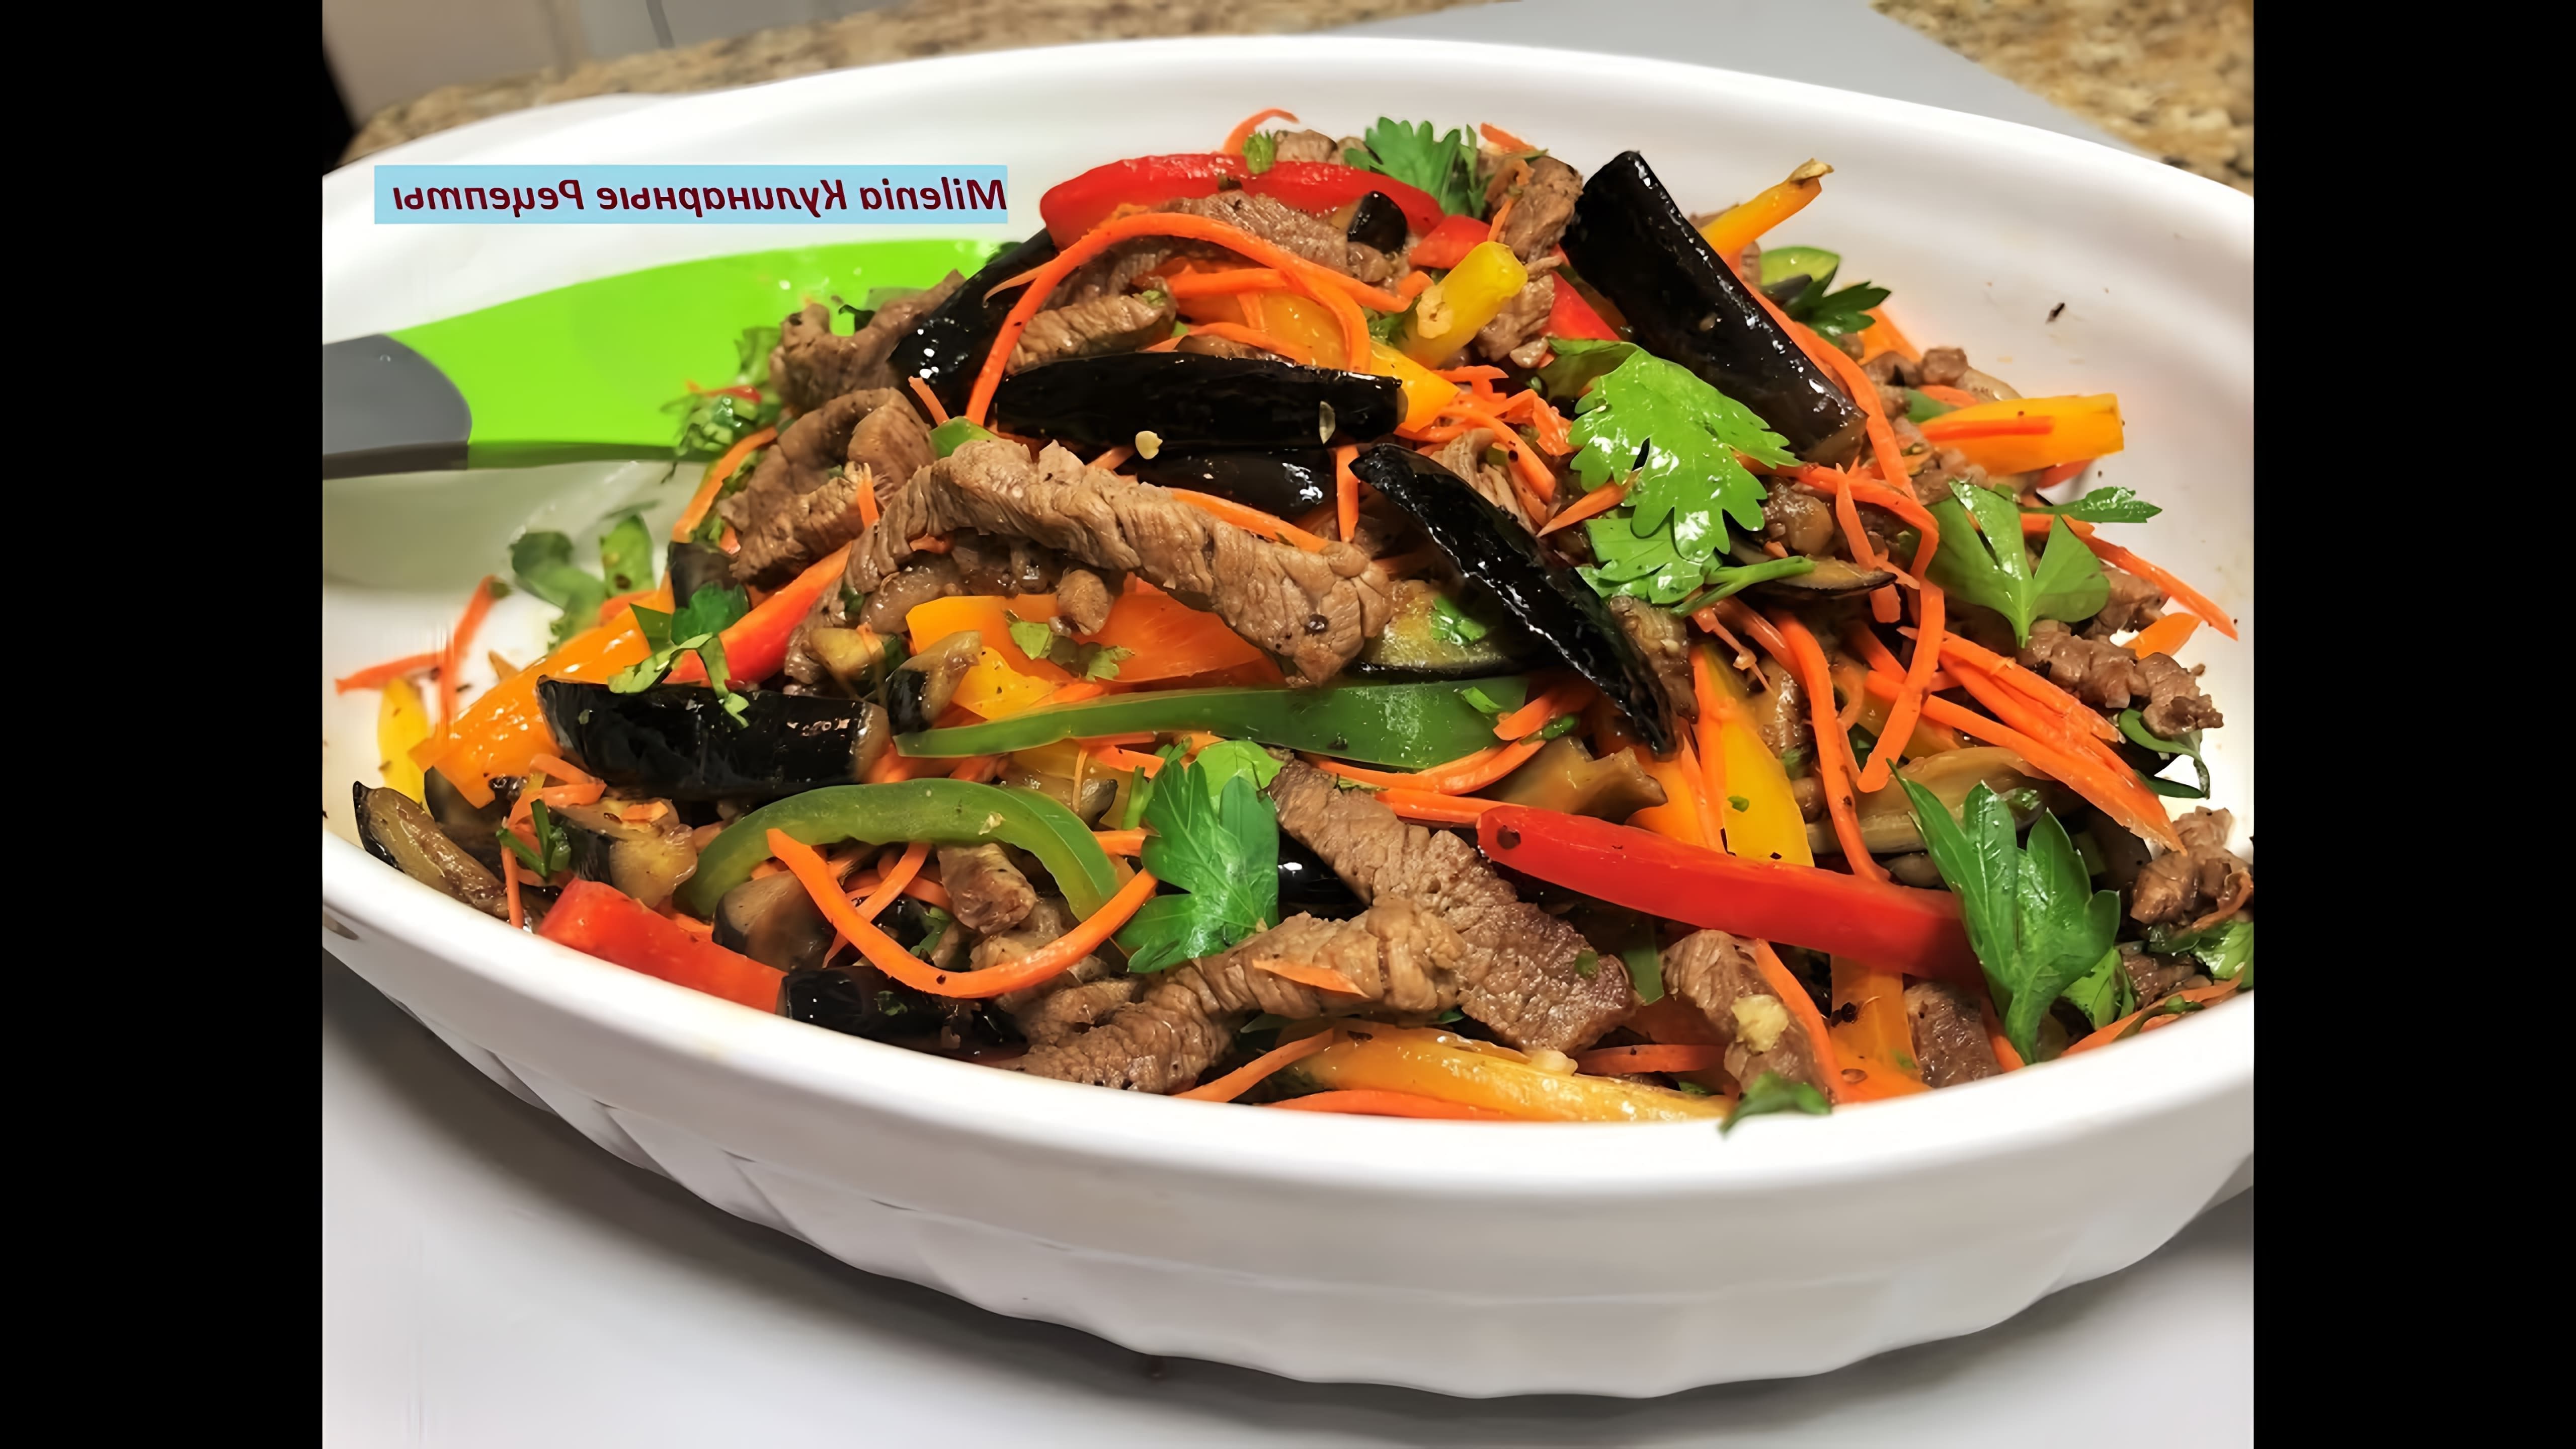 В этом видео демонстрируется рецепт приготовления салата из мяса и овощей, в частности баклажанов